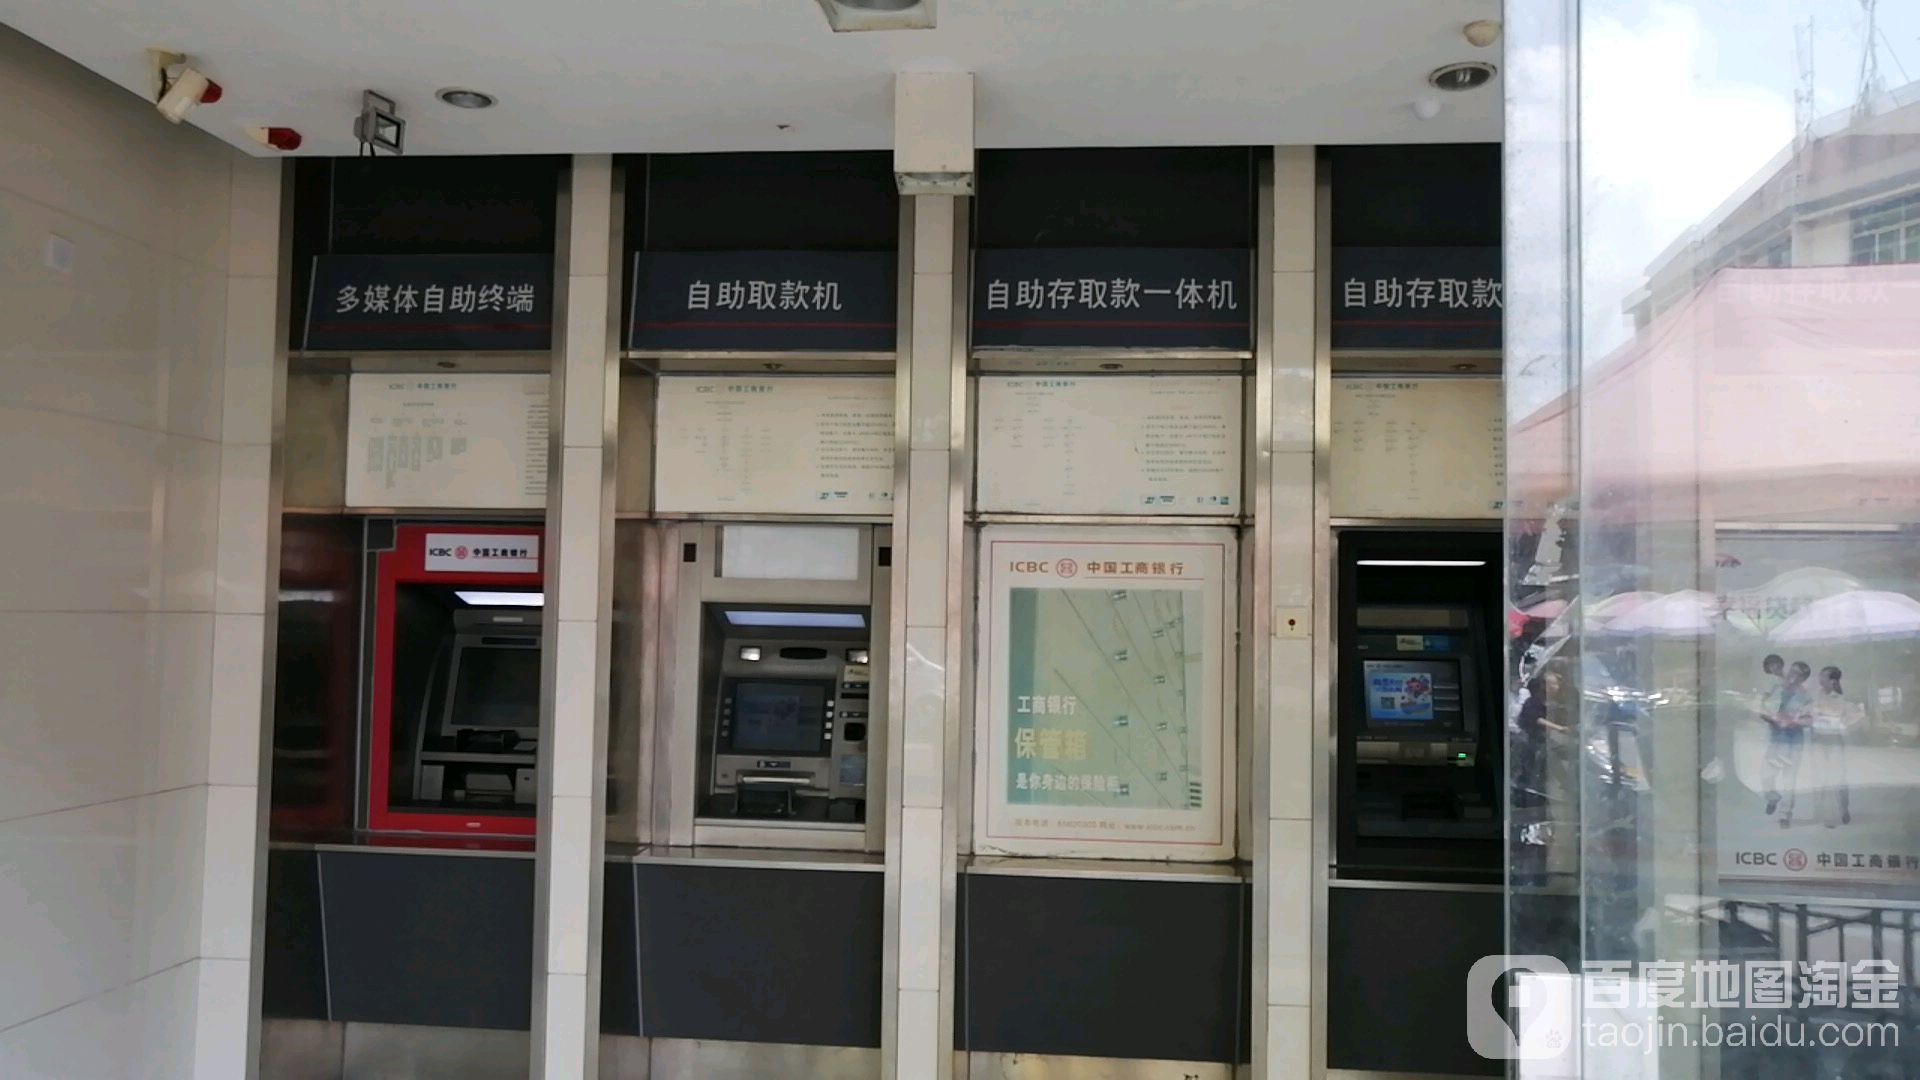 中國工商銀行24小時自助銀行(泉州分行永春支行城東街)